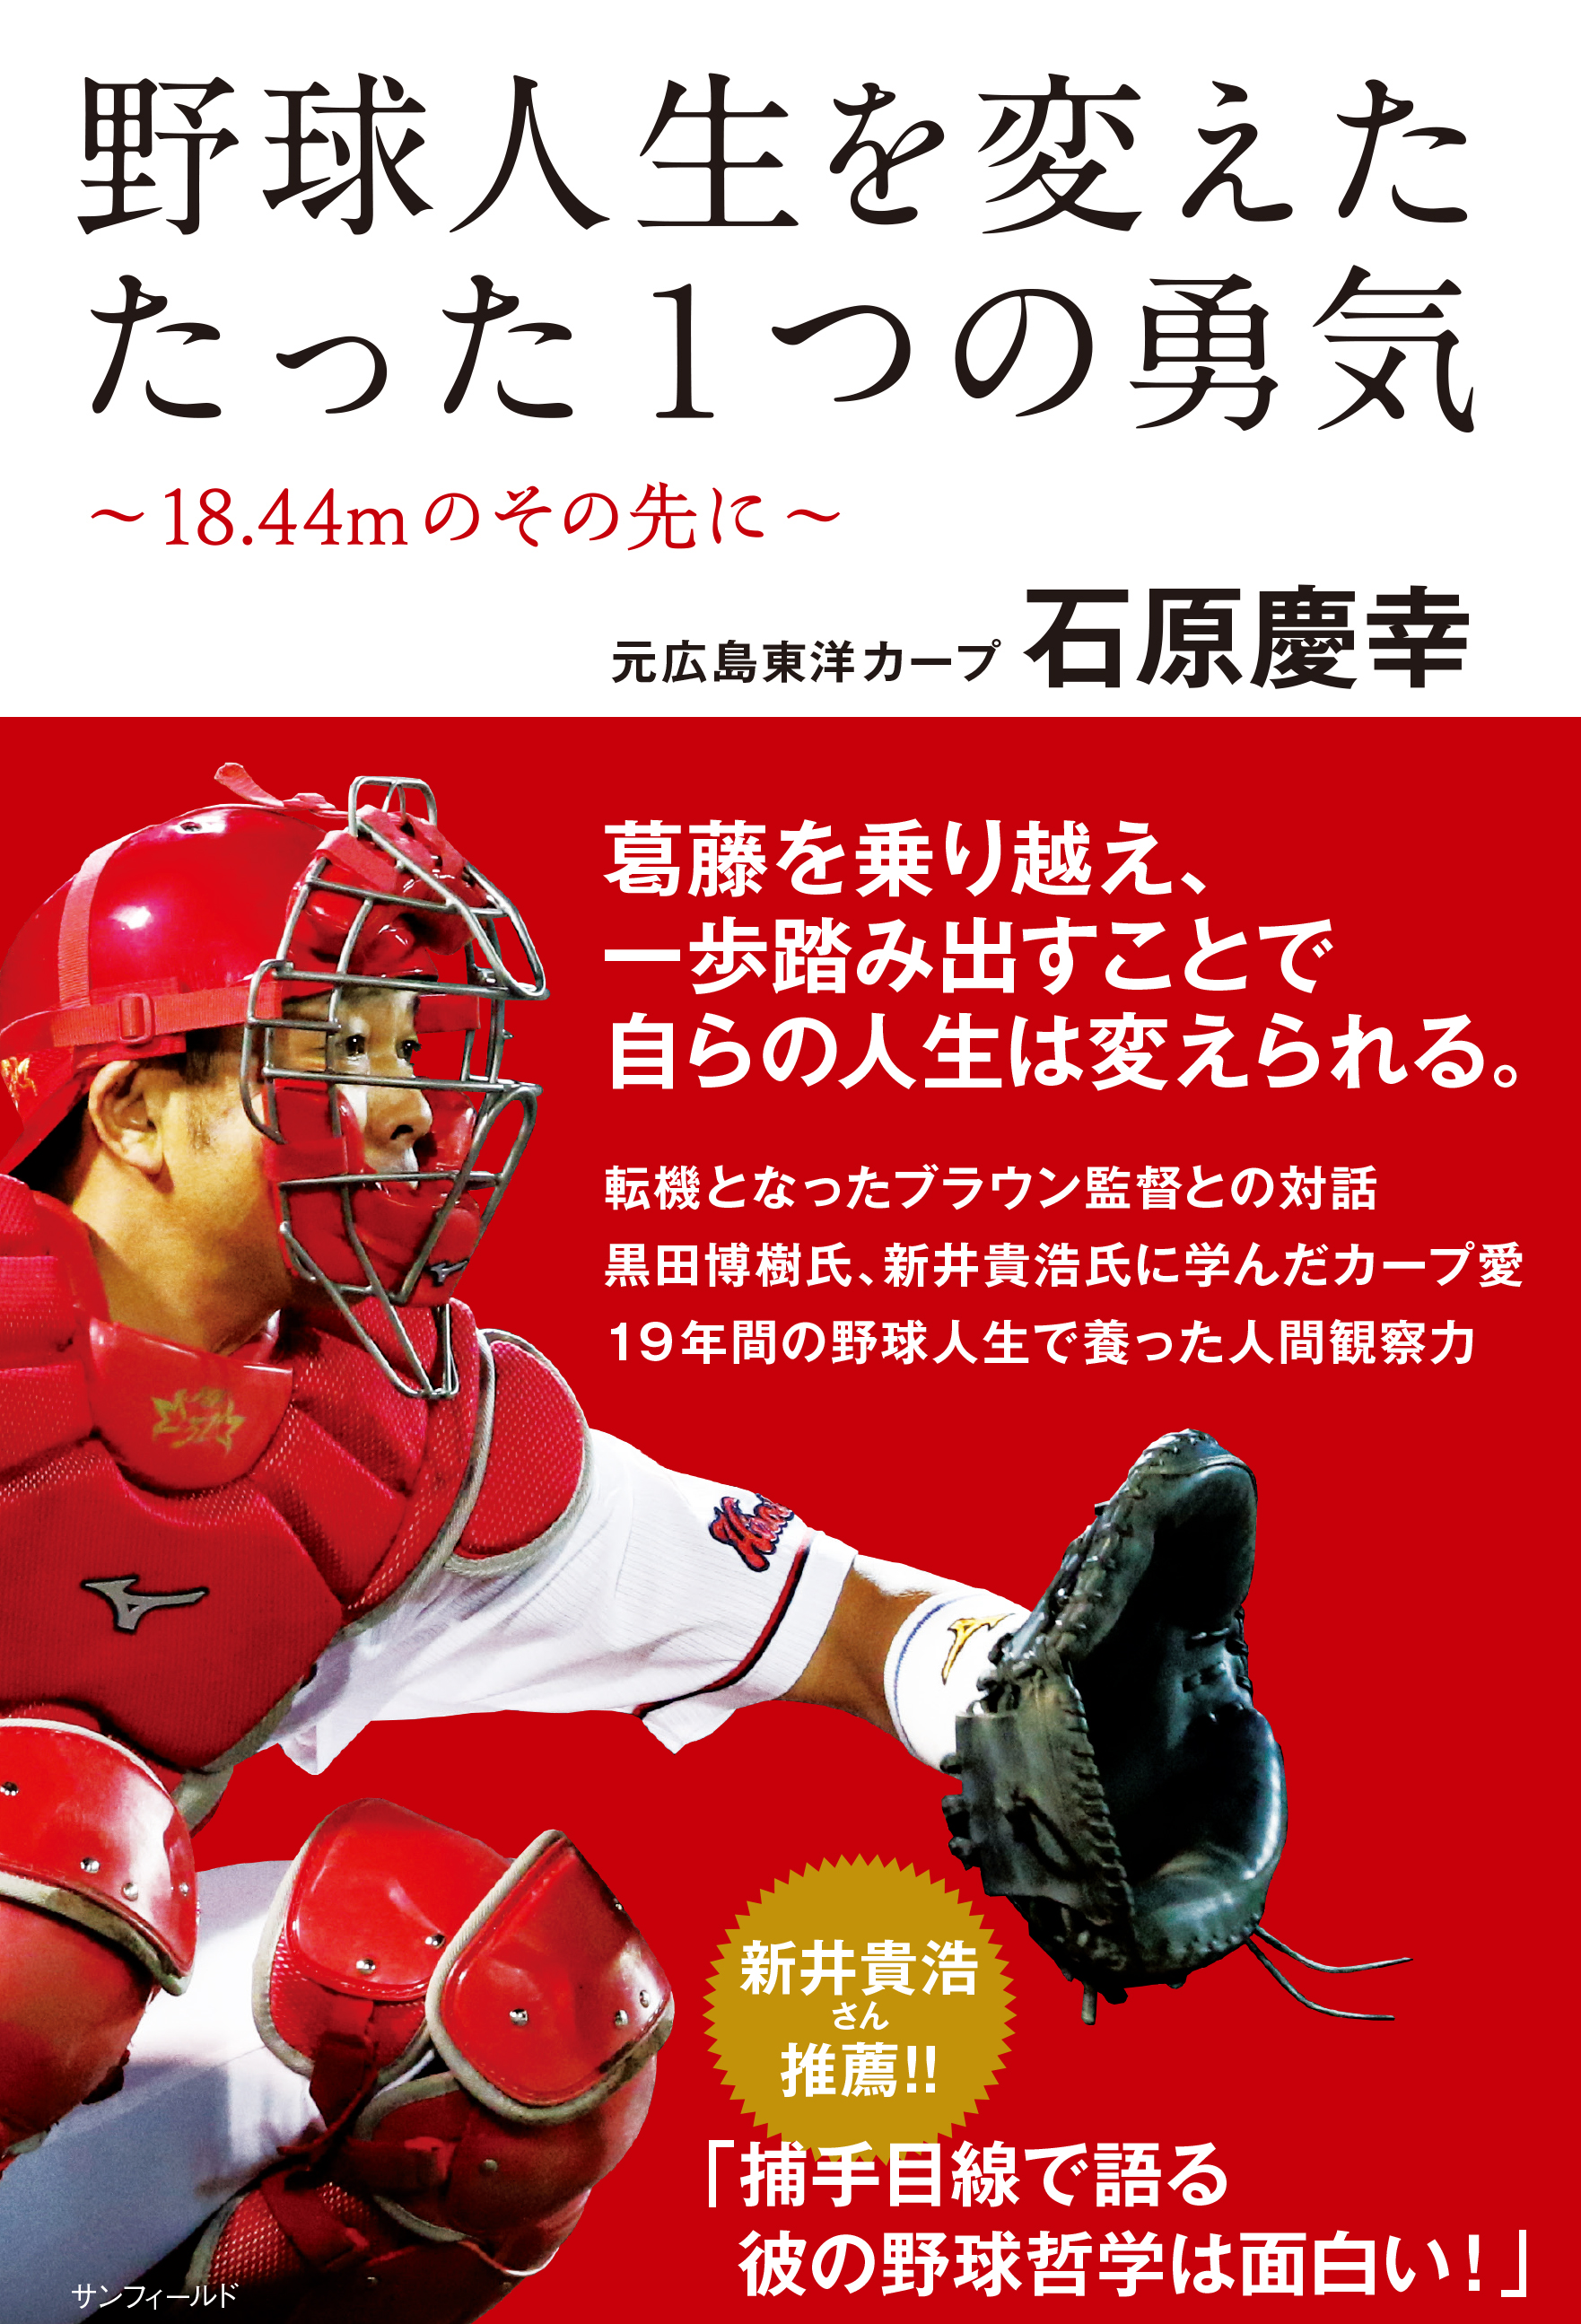 元広島東洋カープ捕手 石原慶幸さん初の著書 野球人生を変えた たった1つの勇気 18 44mのその先に 21年4月29日 木 祝 に発売 株式会社サンフィールドのプレスリリース